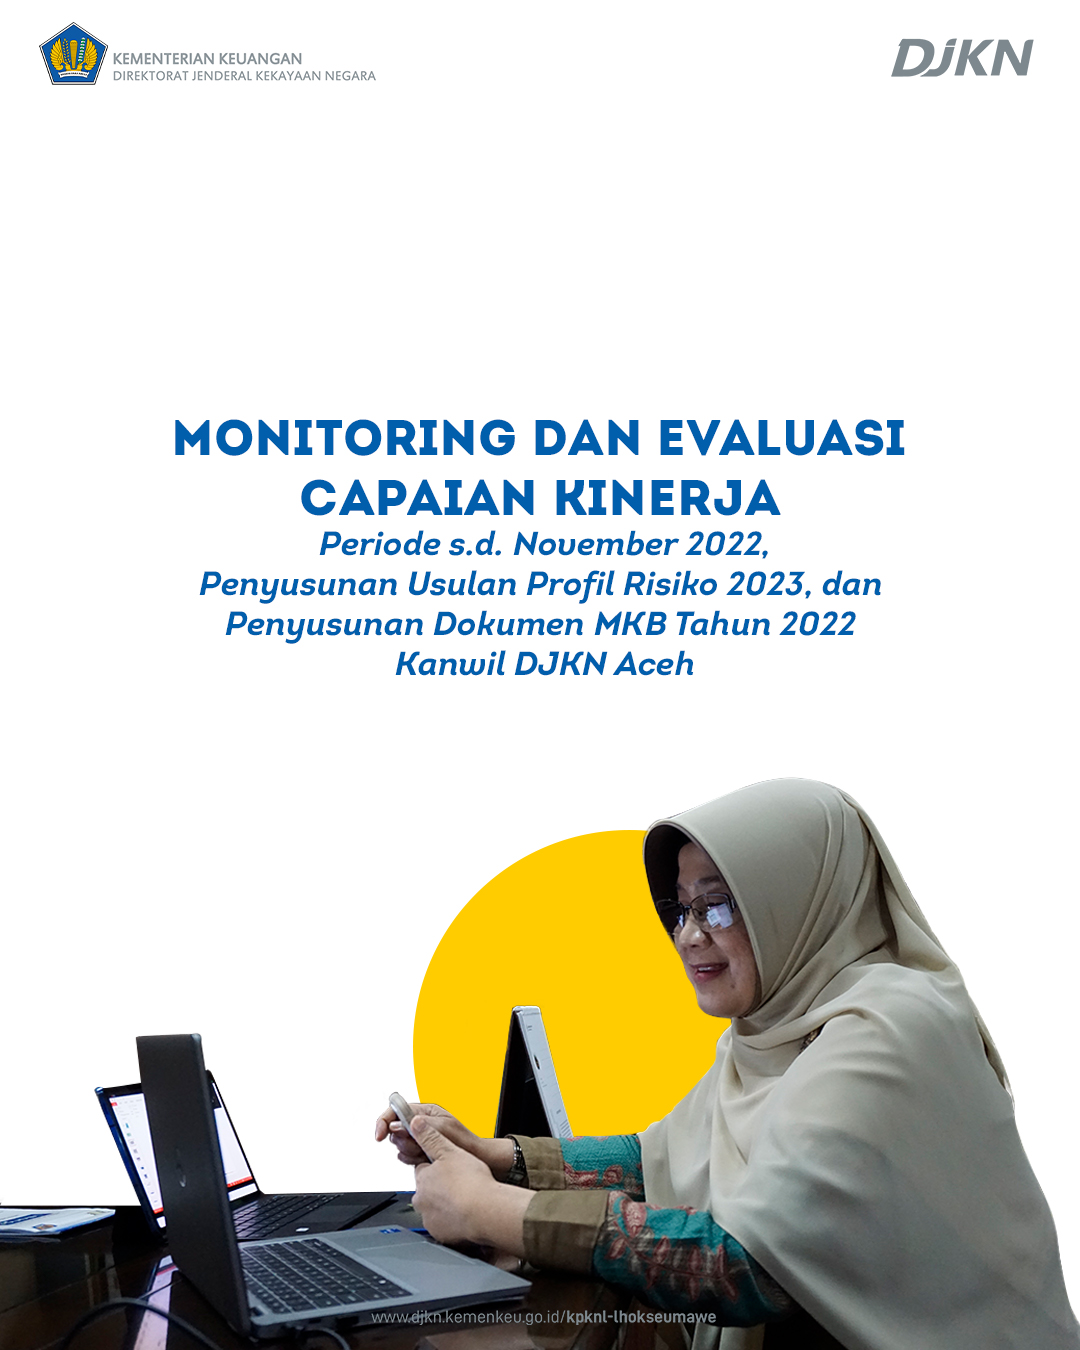 Monitoring dan Evaluasi Capaian Kinerja serta Penyusunan Usulan Profil Risiko 2023  di jajaran Kanwil DJKN Aceh